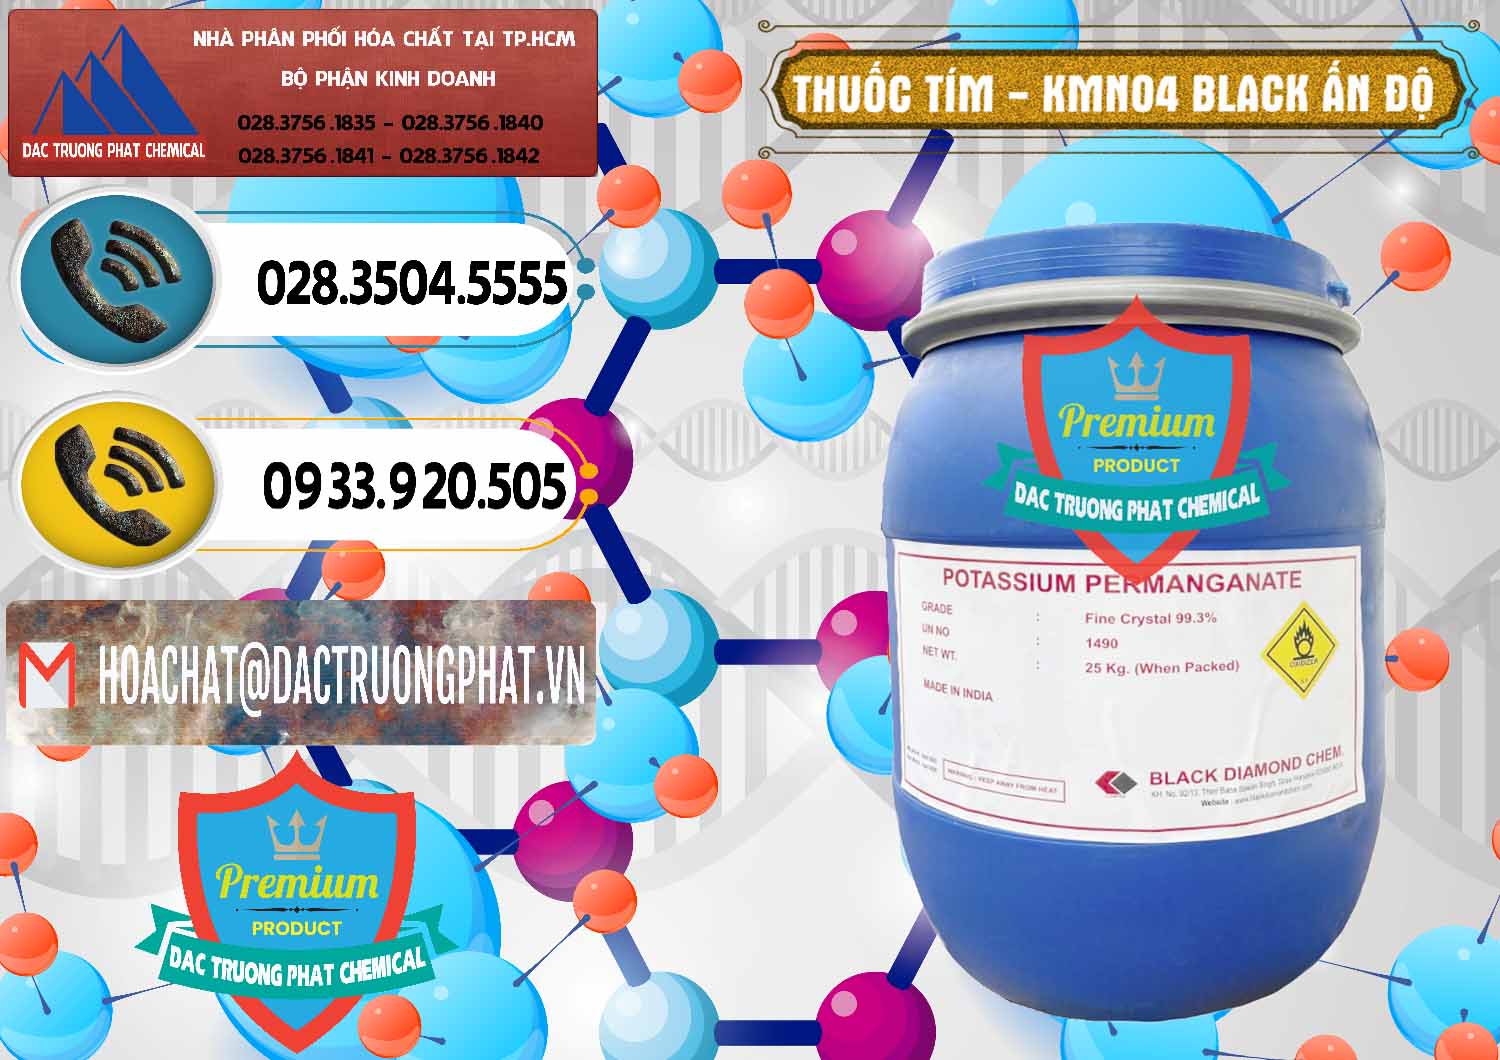 Nơi chuyên kinh doanh - bán Thuốc Tím - KMNO4 Black Diamond Ấn Độ India - 0414 - Nơi chuyên nhập khẩu _ cung cấp hóa chất tại TP.HCM - hoachatdetnhuom.vn